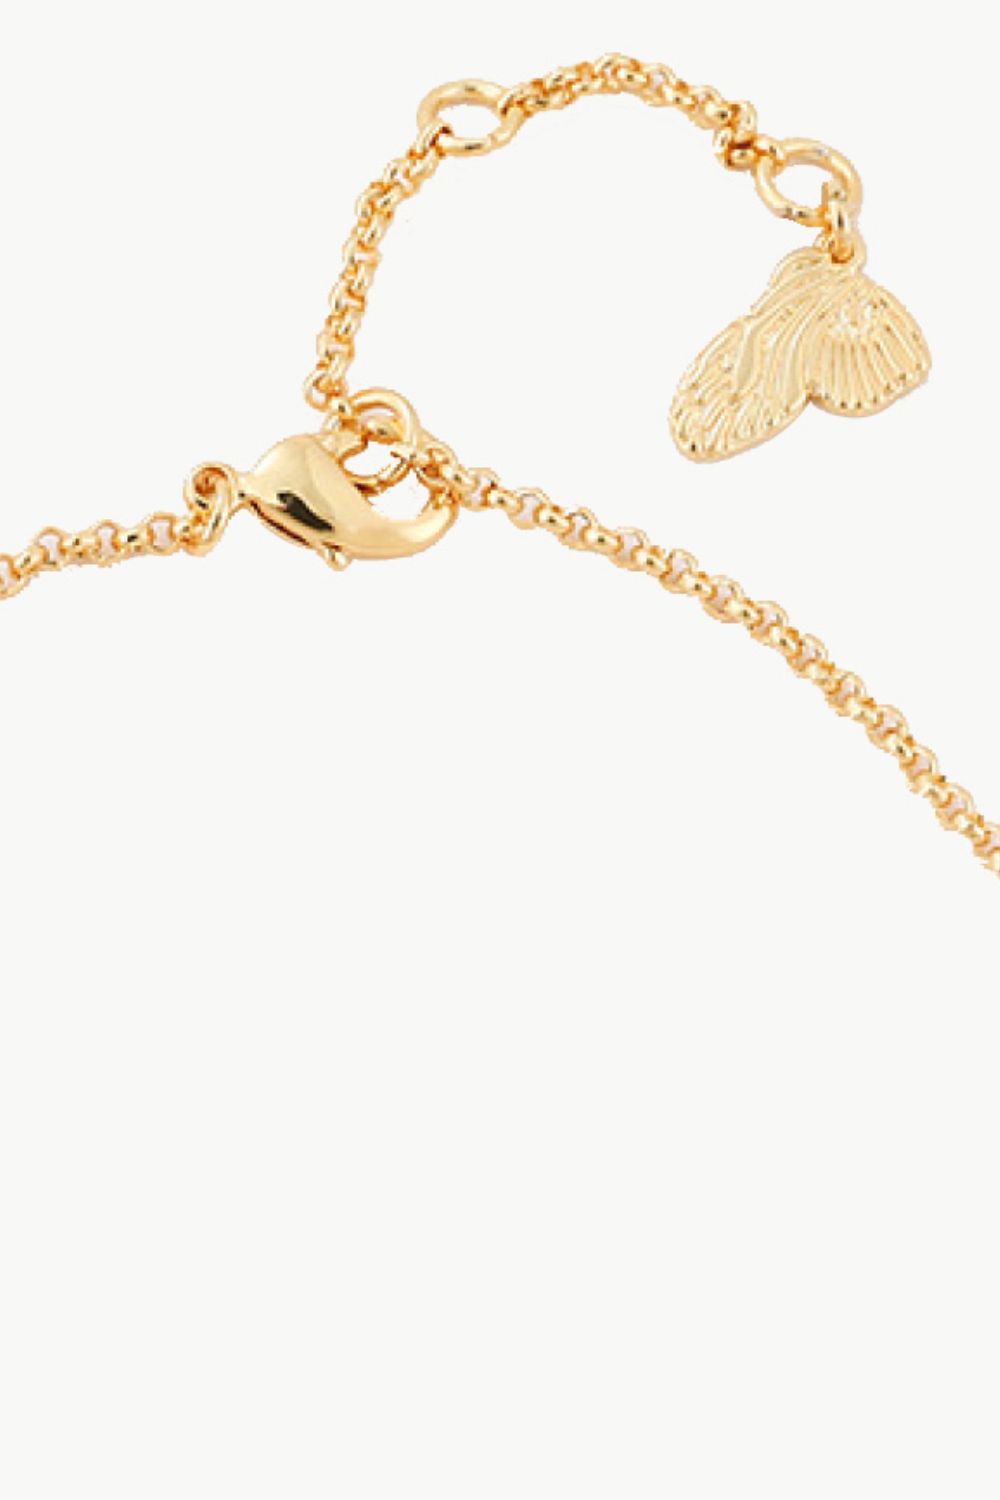 Heart Lock Charm Bracelet - Women’s Jewelry - Bracelets - 6 - 2024